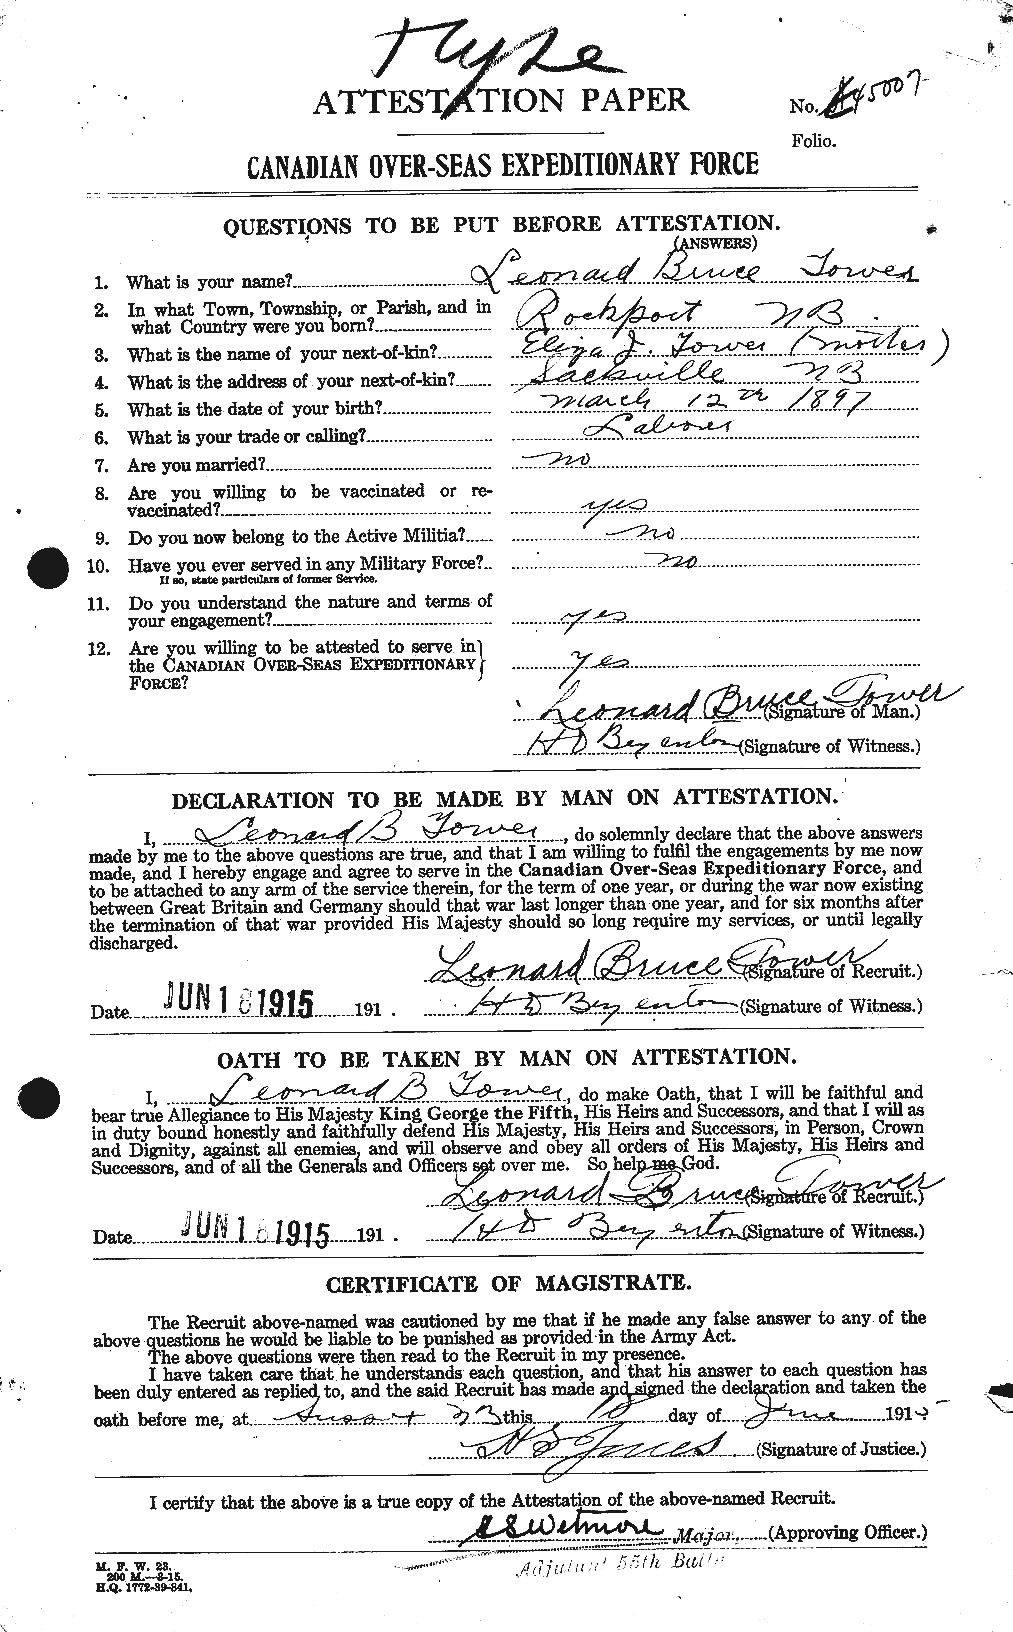 Dossiers du Personnel de la Première Guerre mondiale - CEC 636197a